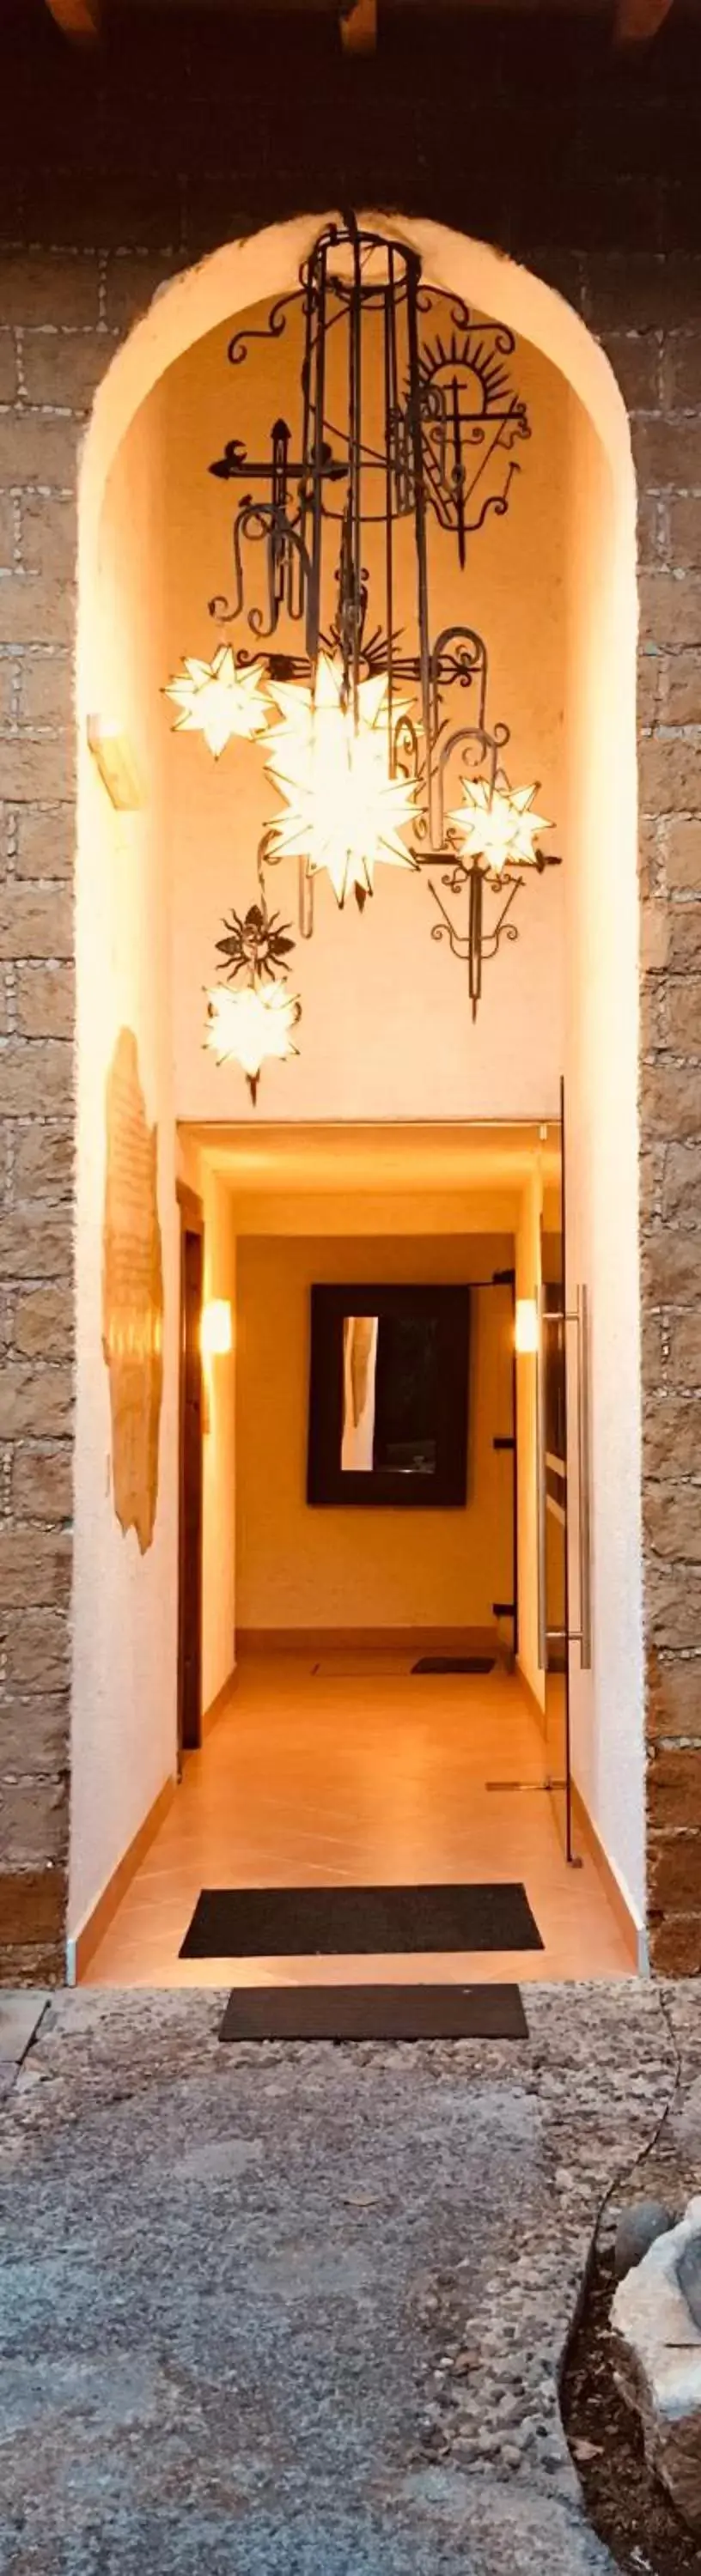 Facade/entrance in Hotel Villas Casa Morada